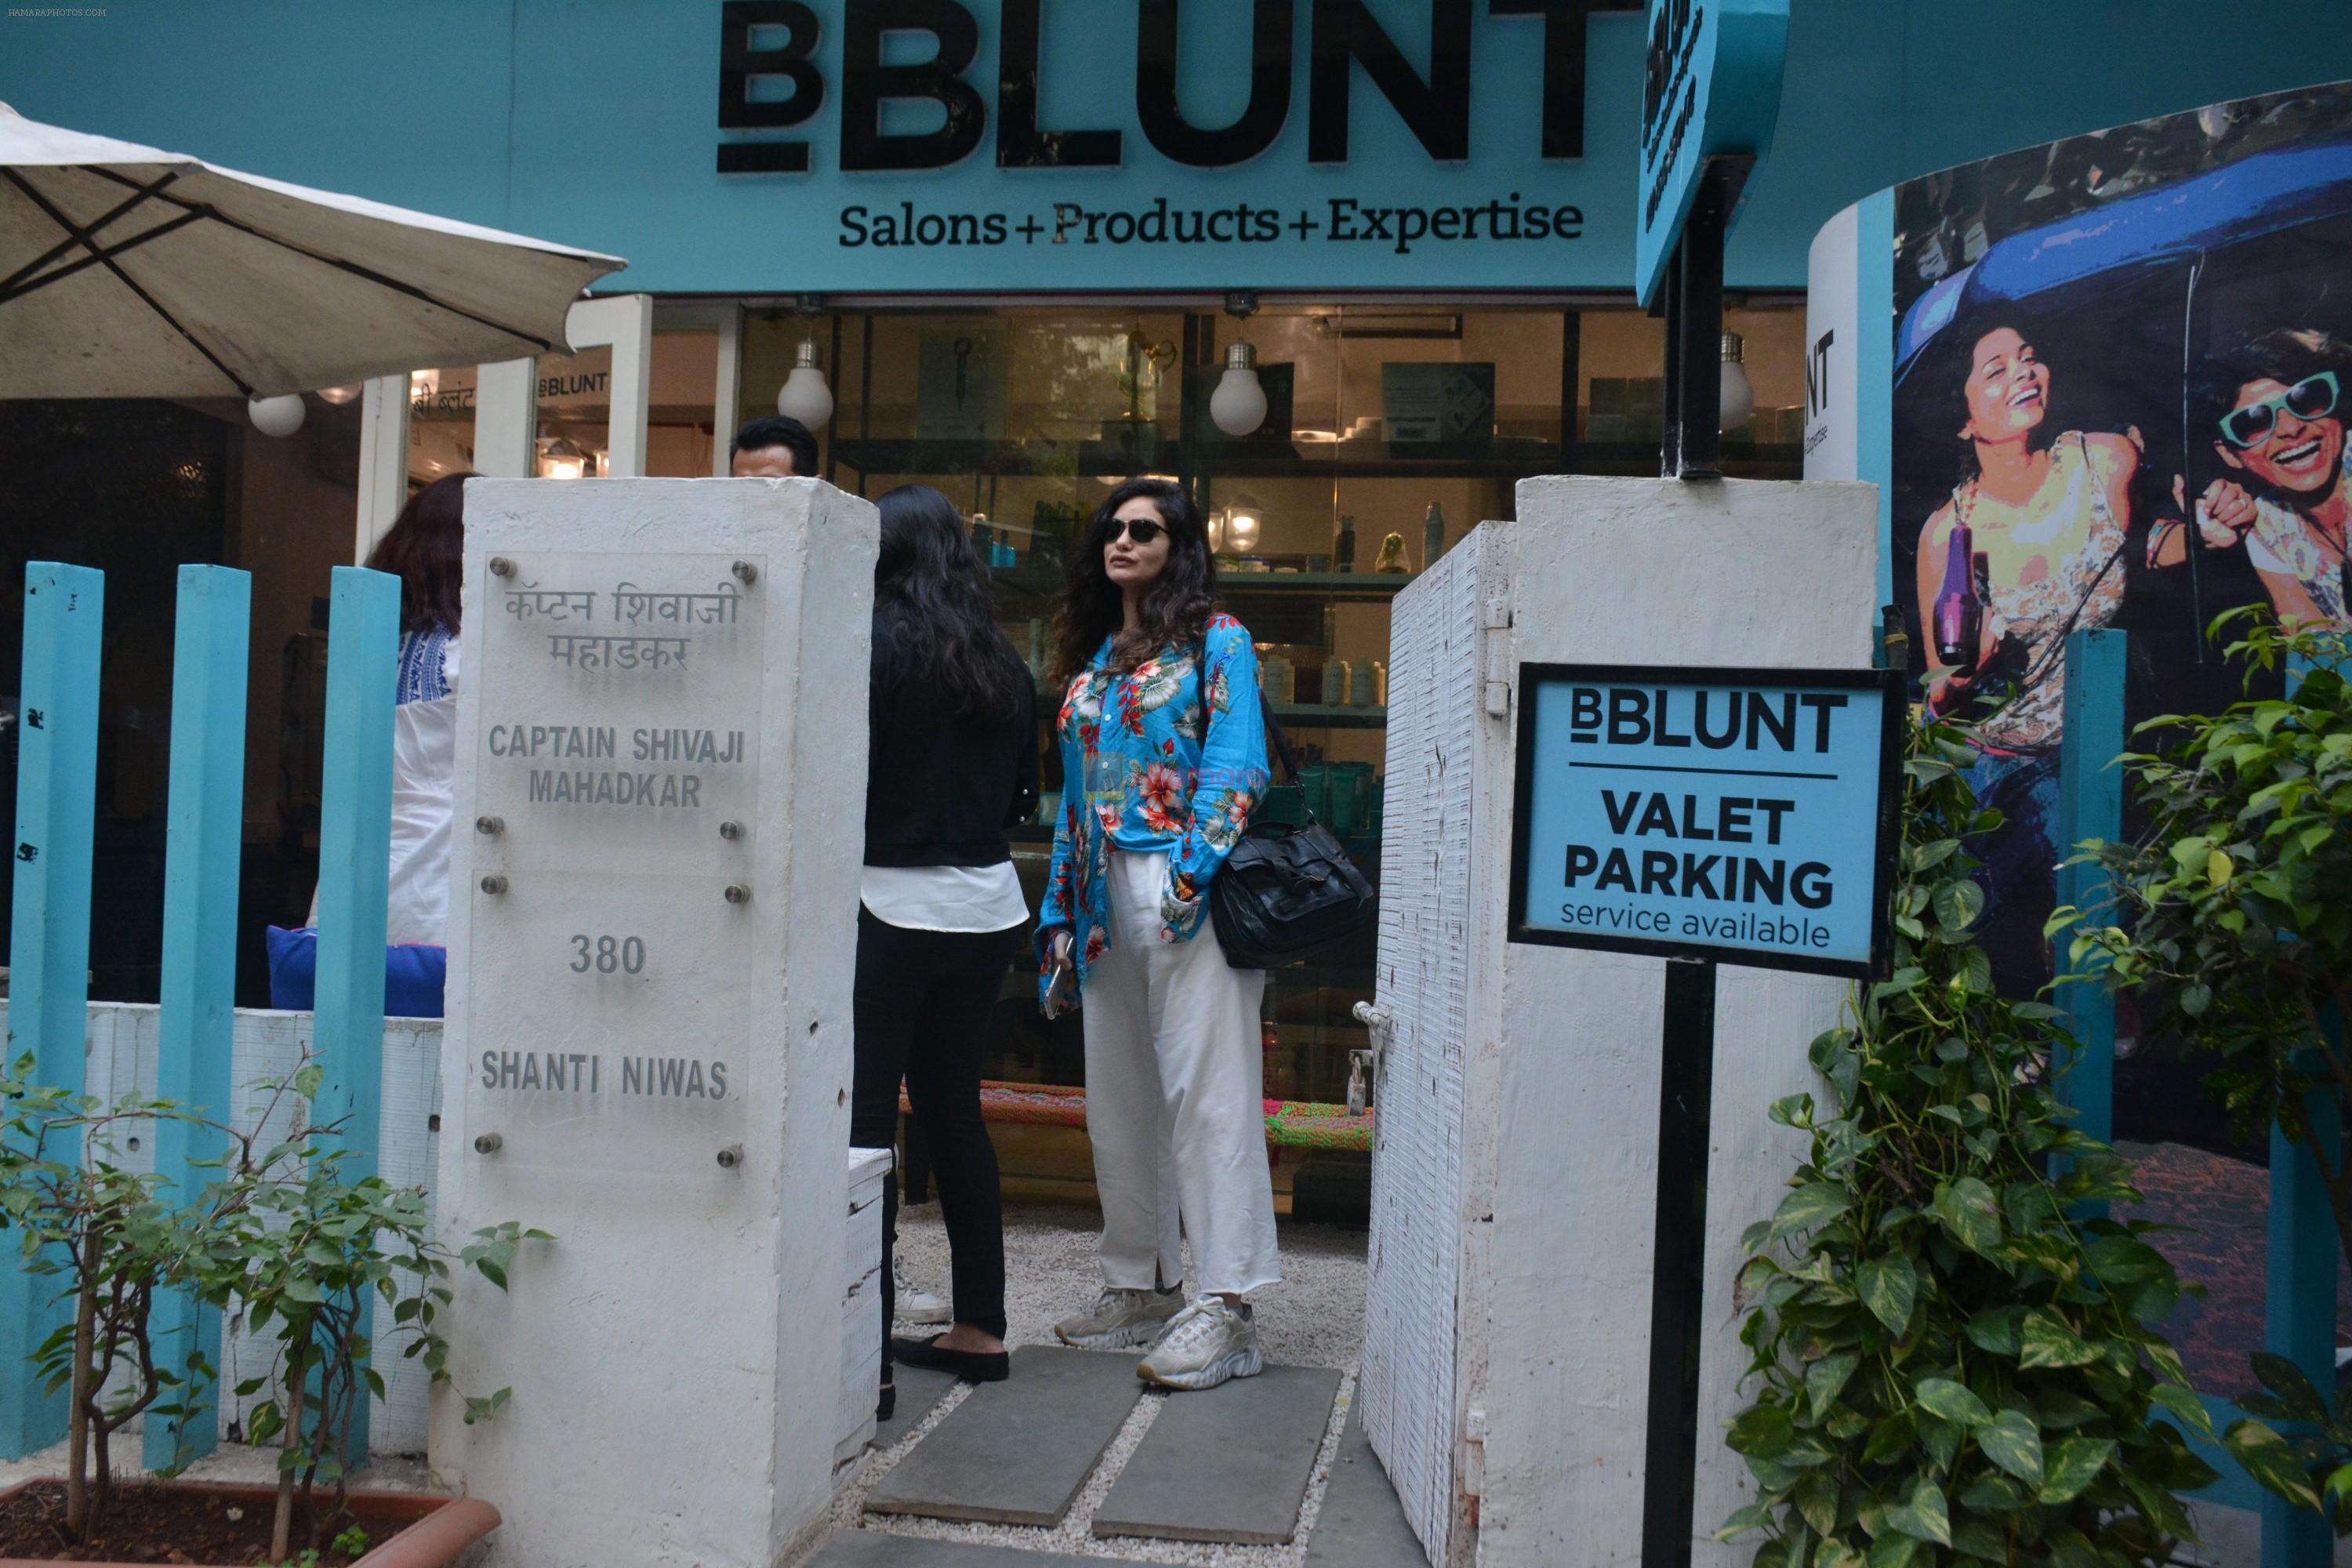 Arjun Rampal & Gabriella spotted spotted at bblunt bandra on 26th Feb 2019